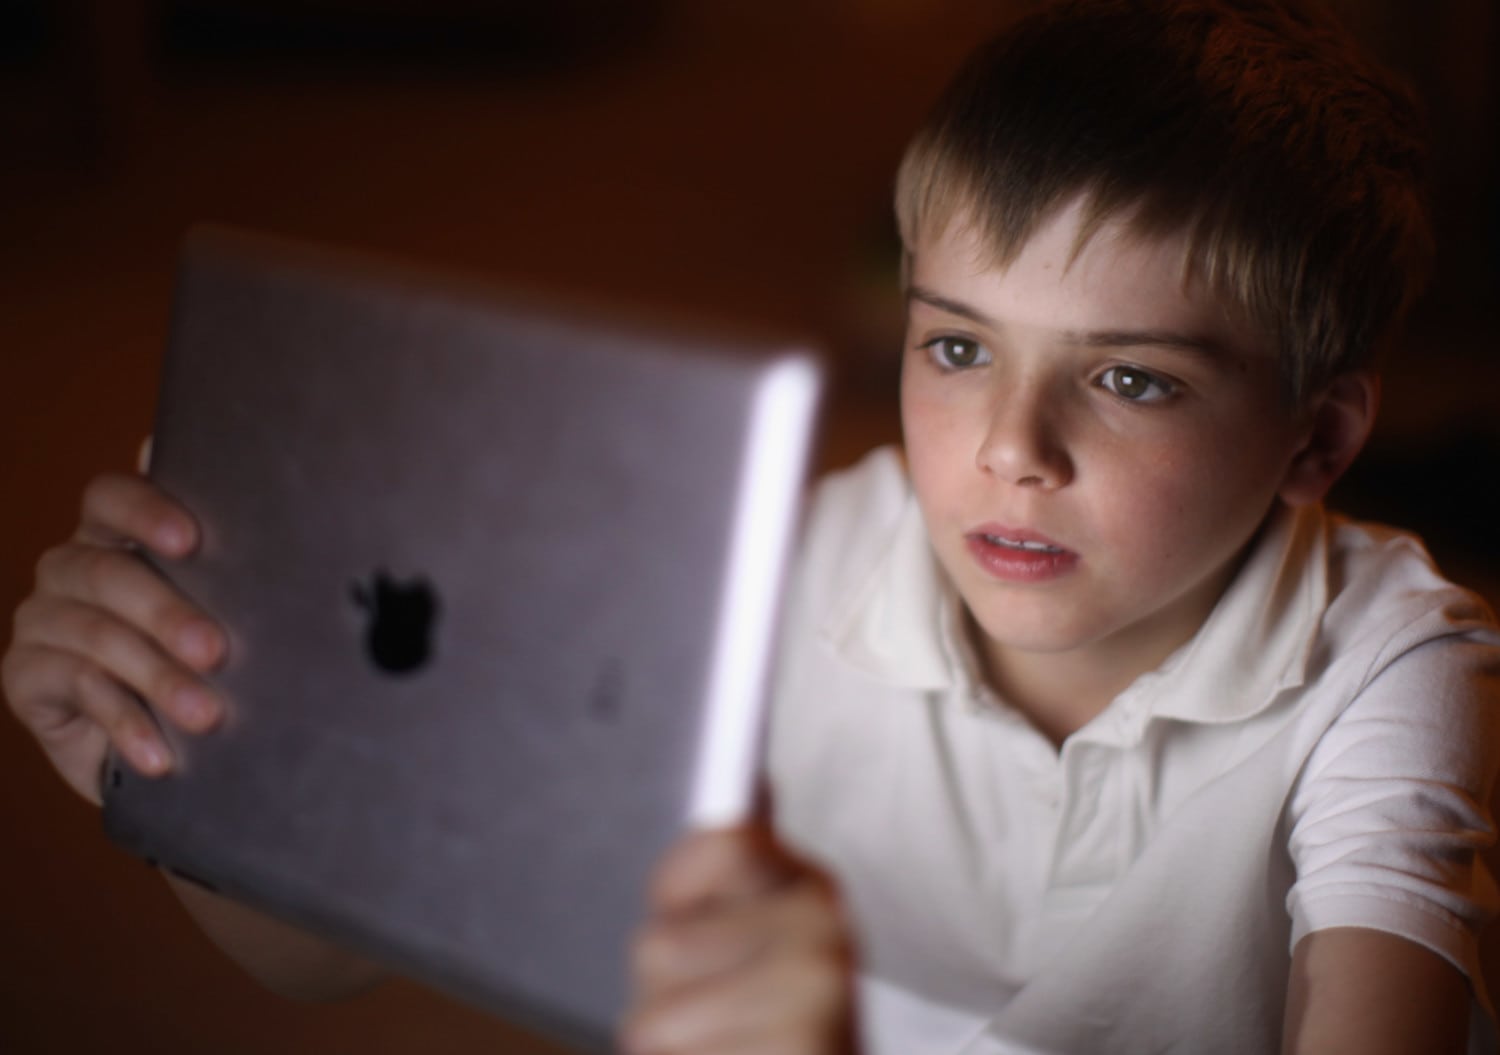 kids on apple computers photo